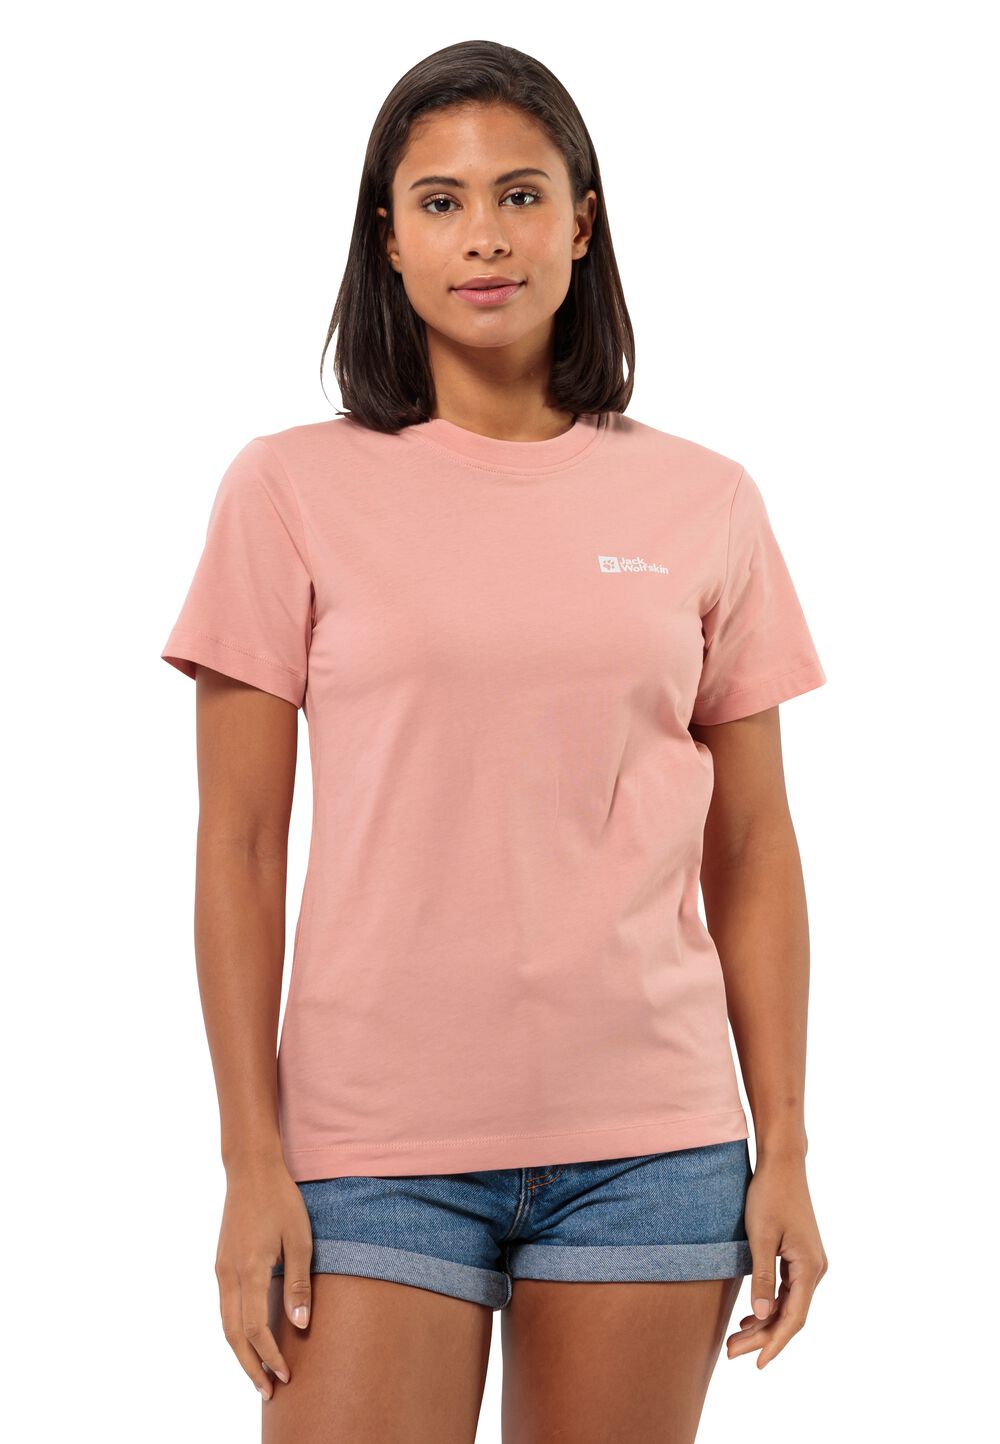 Jack Wolfskin T-Shirt aus Bio-Baumwolle Damen Essential T-Shirt Women XXL braun rose dawn von Jack Wolfskin